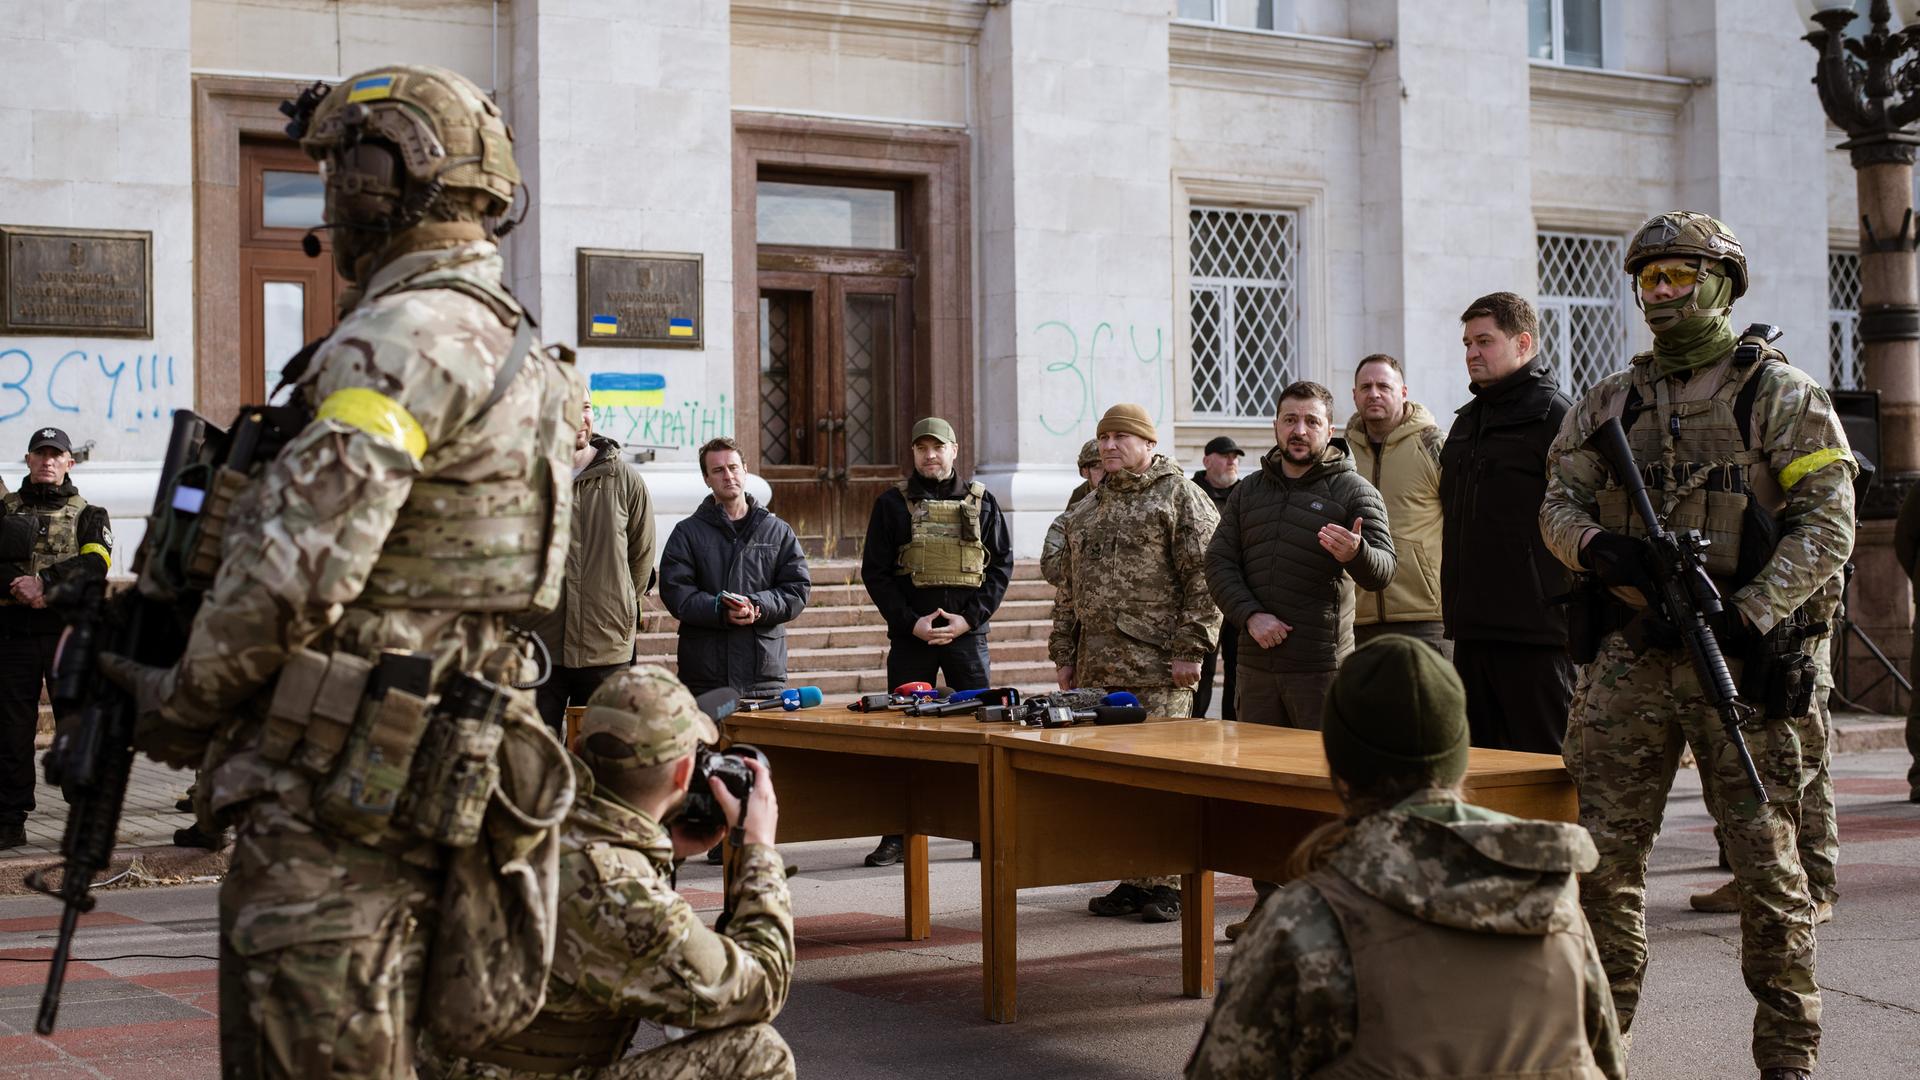 Der ukrainische Präsident Wolodymyr Selenskyj gibt nach der Befreiung von Cherson von den Russen eine Pressekonferenz in der Stadt. Soldaten sichern den Platz